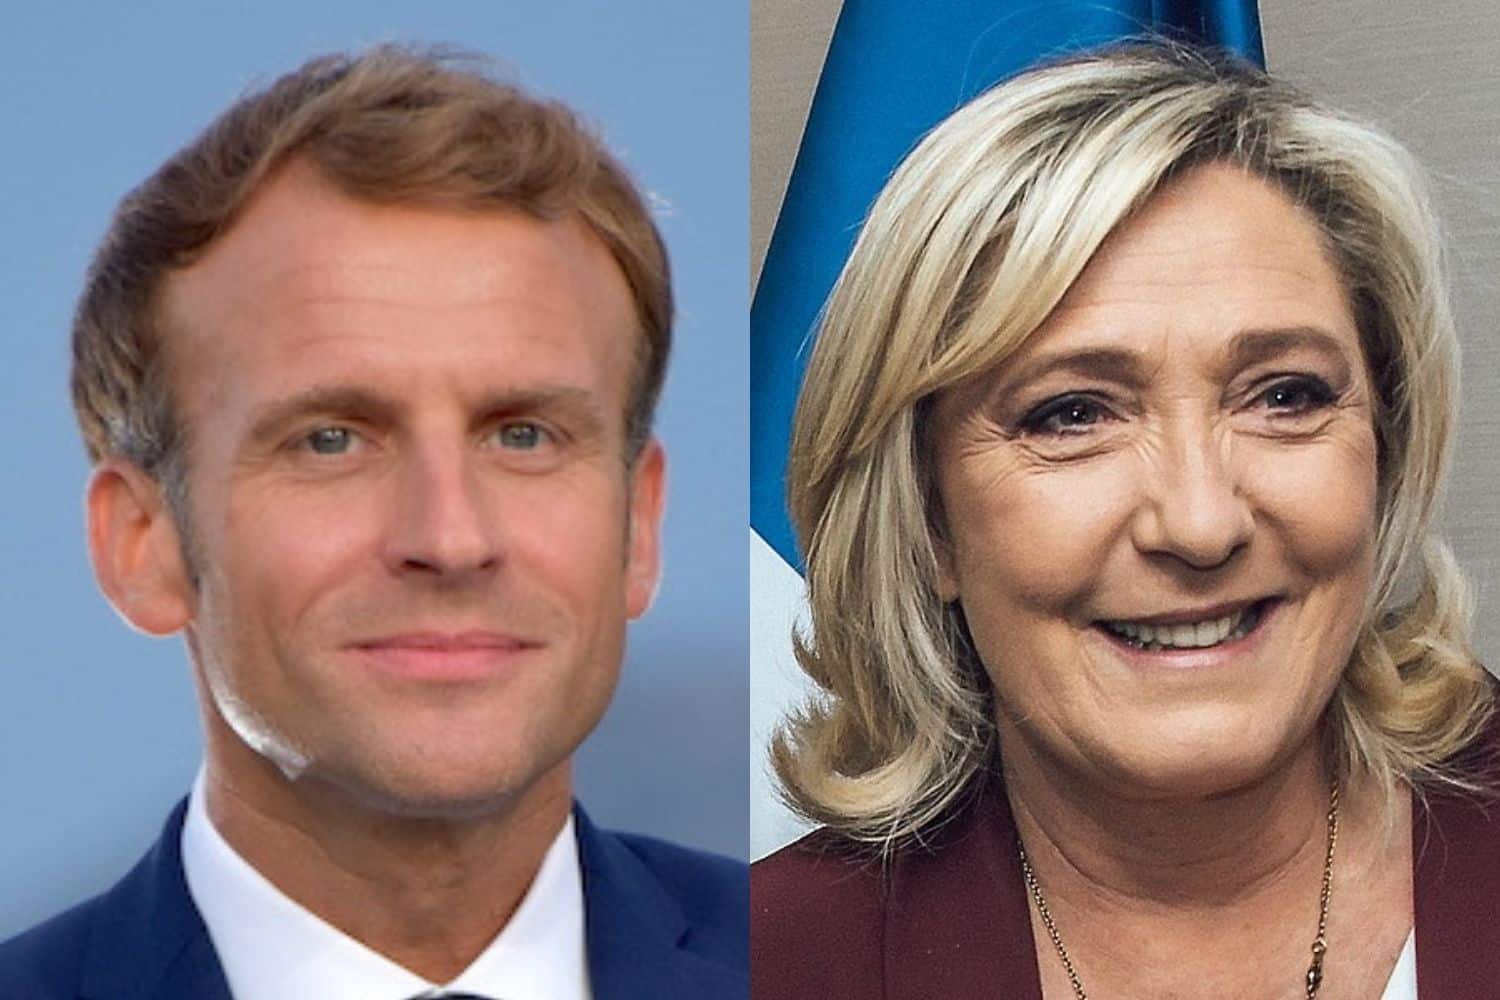 Emmanuel Macron, Qu&#8217;ont prévu Emmanuel Macron et Marine Le Pen en cas de victoire ?, Made in Marseille